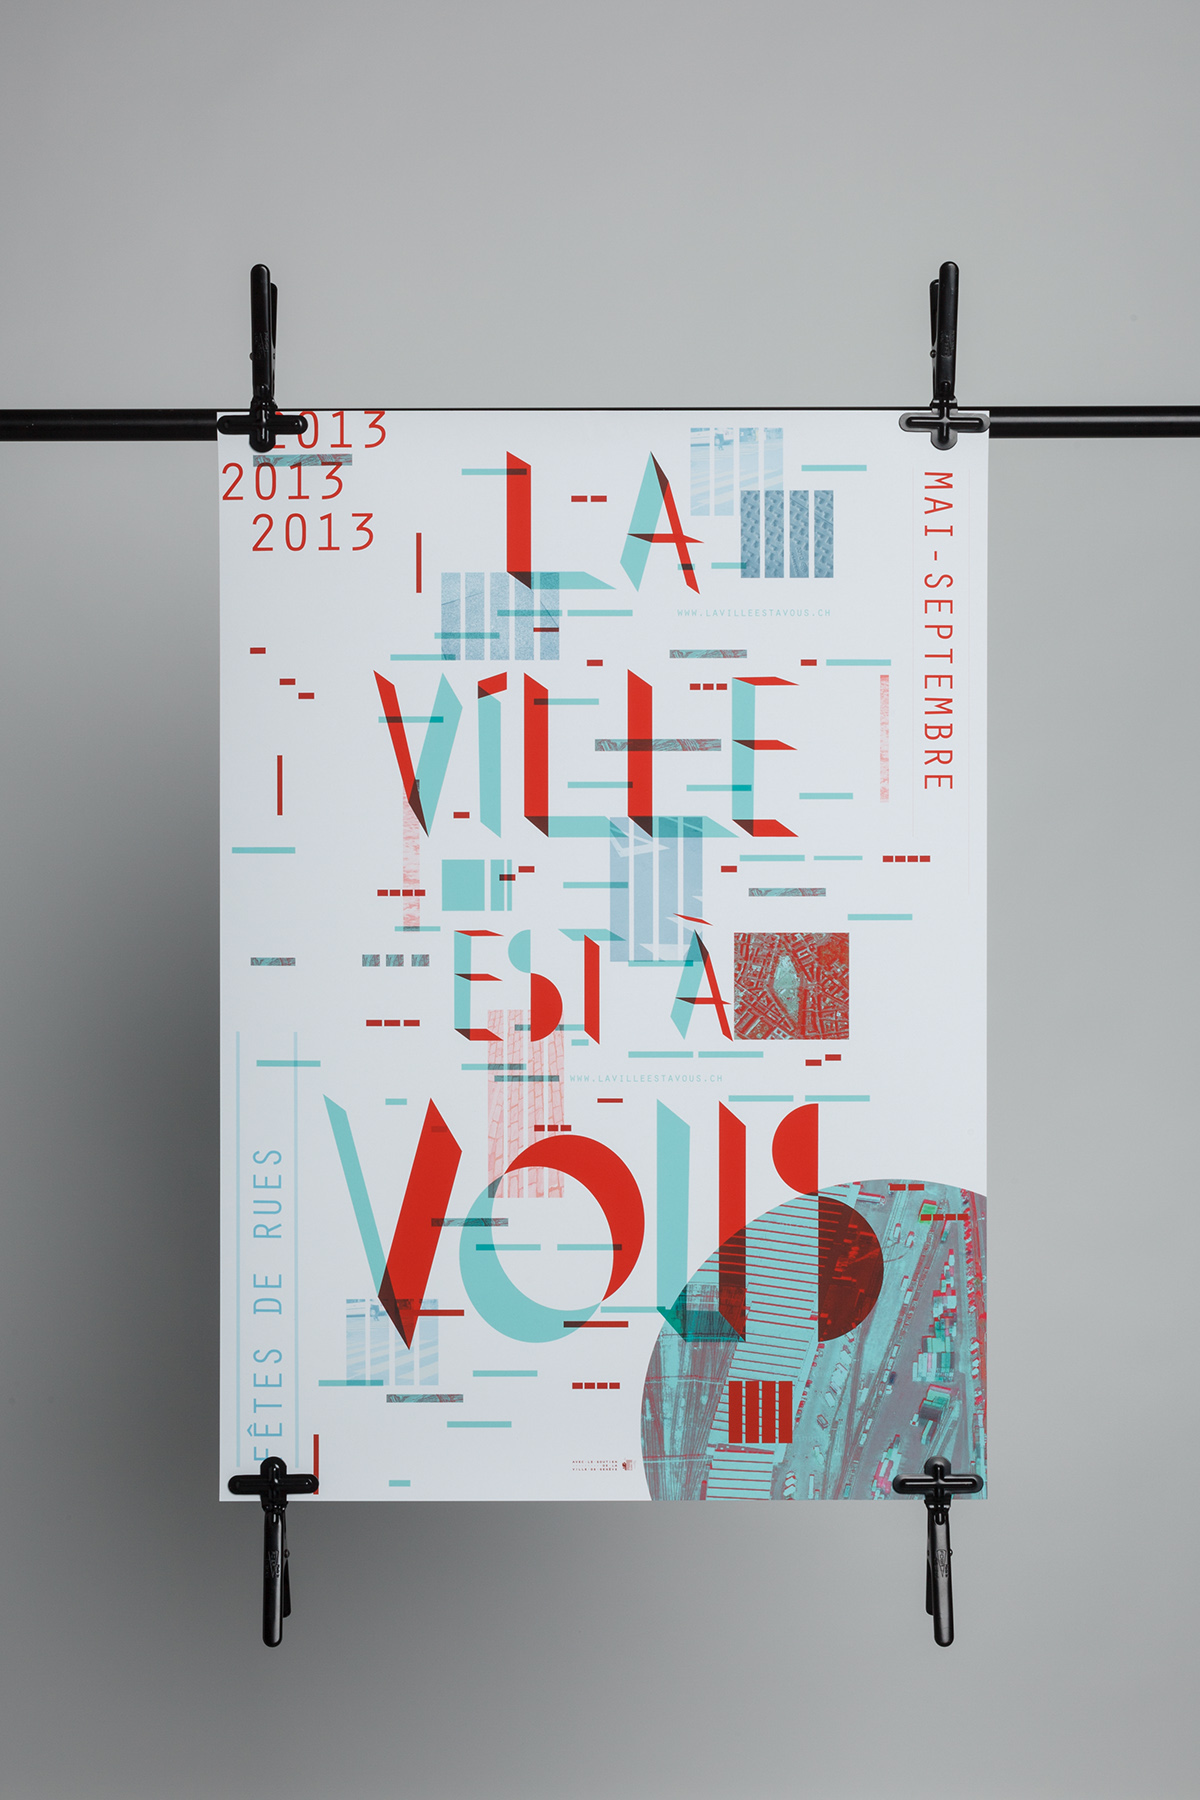 poster geneve Geneva lavilleestàvous city ville vous You Typographie swiss design affiche festival rue Street